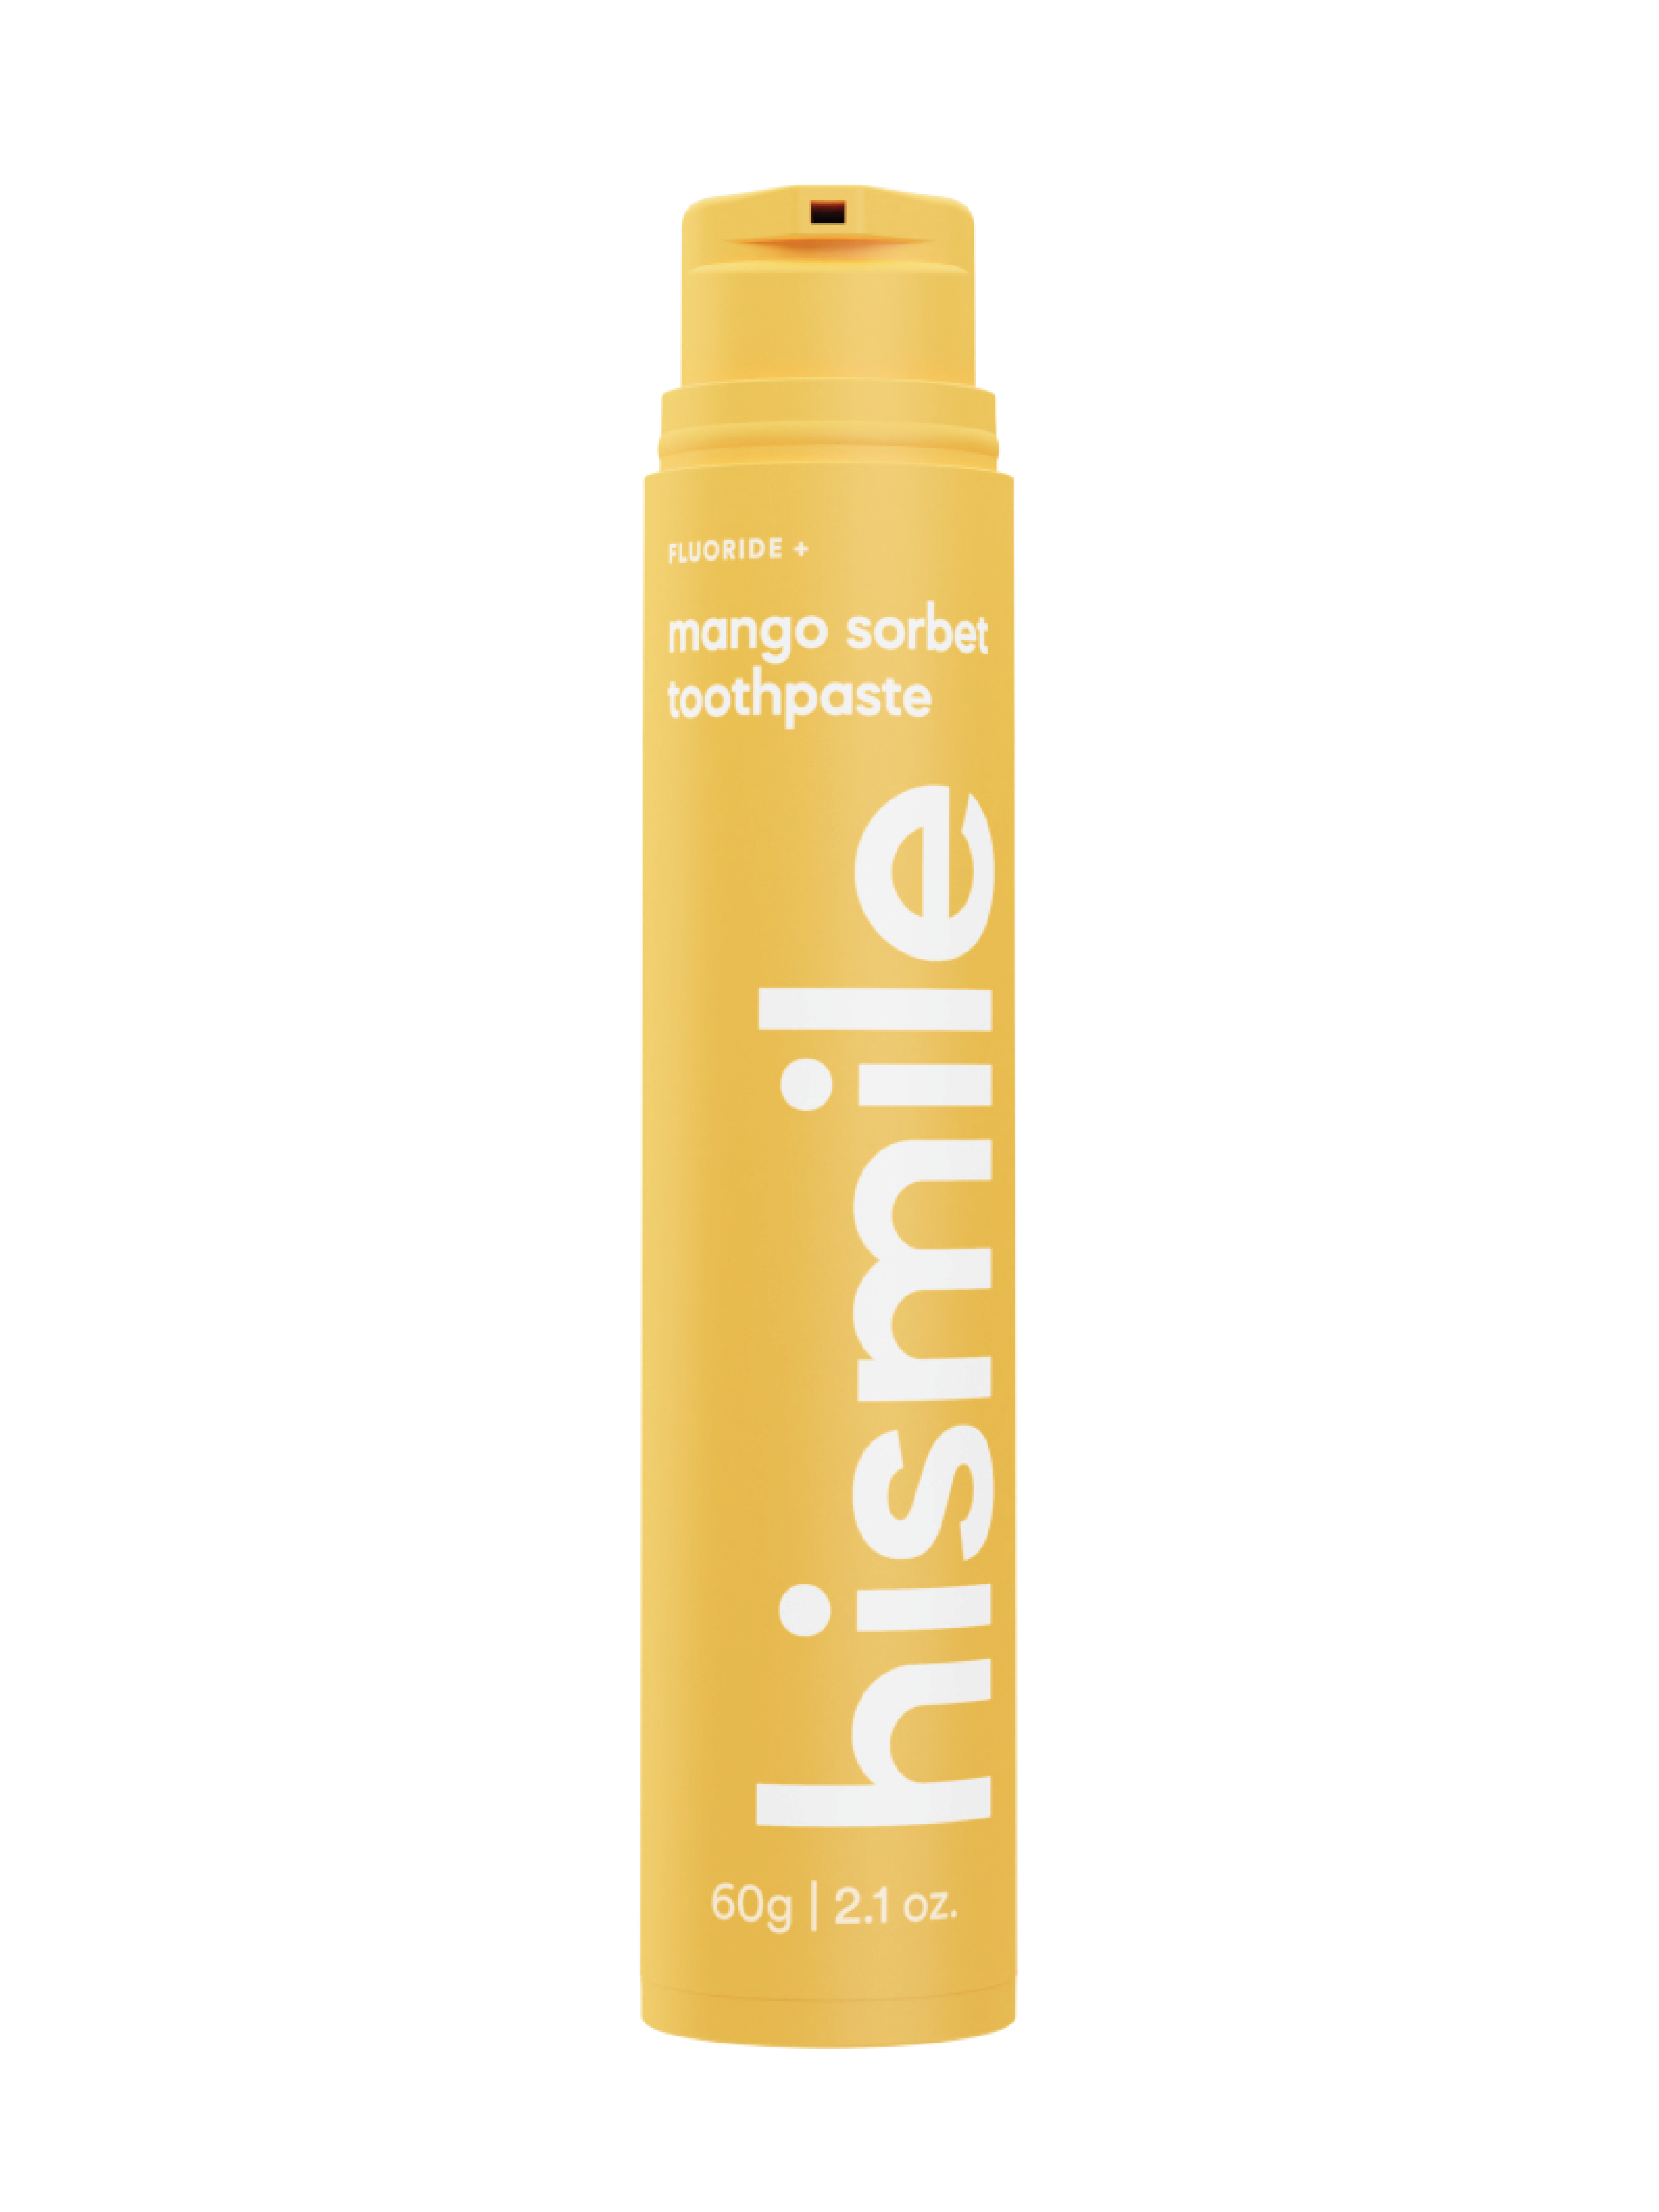 Hismile Mango Sorbet Toothpaste, 60 g